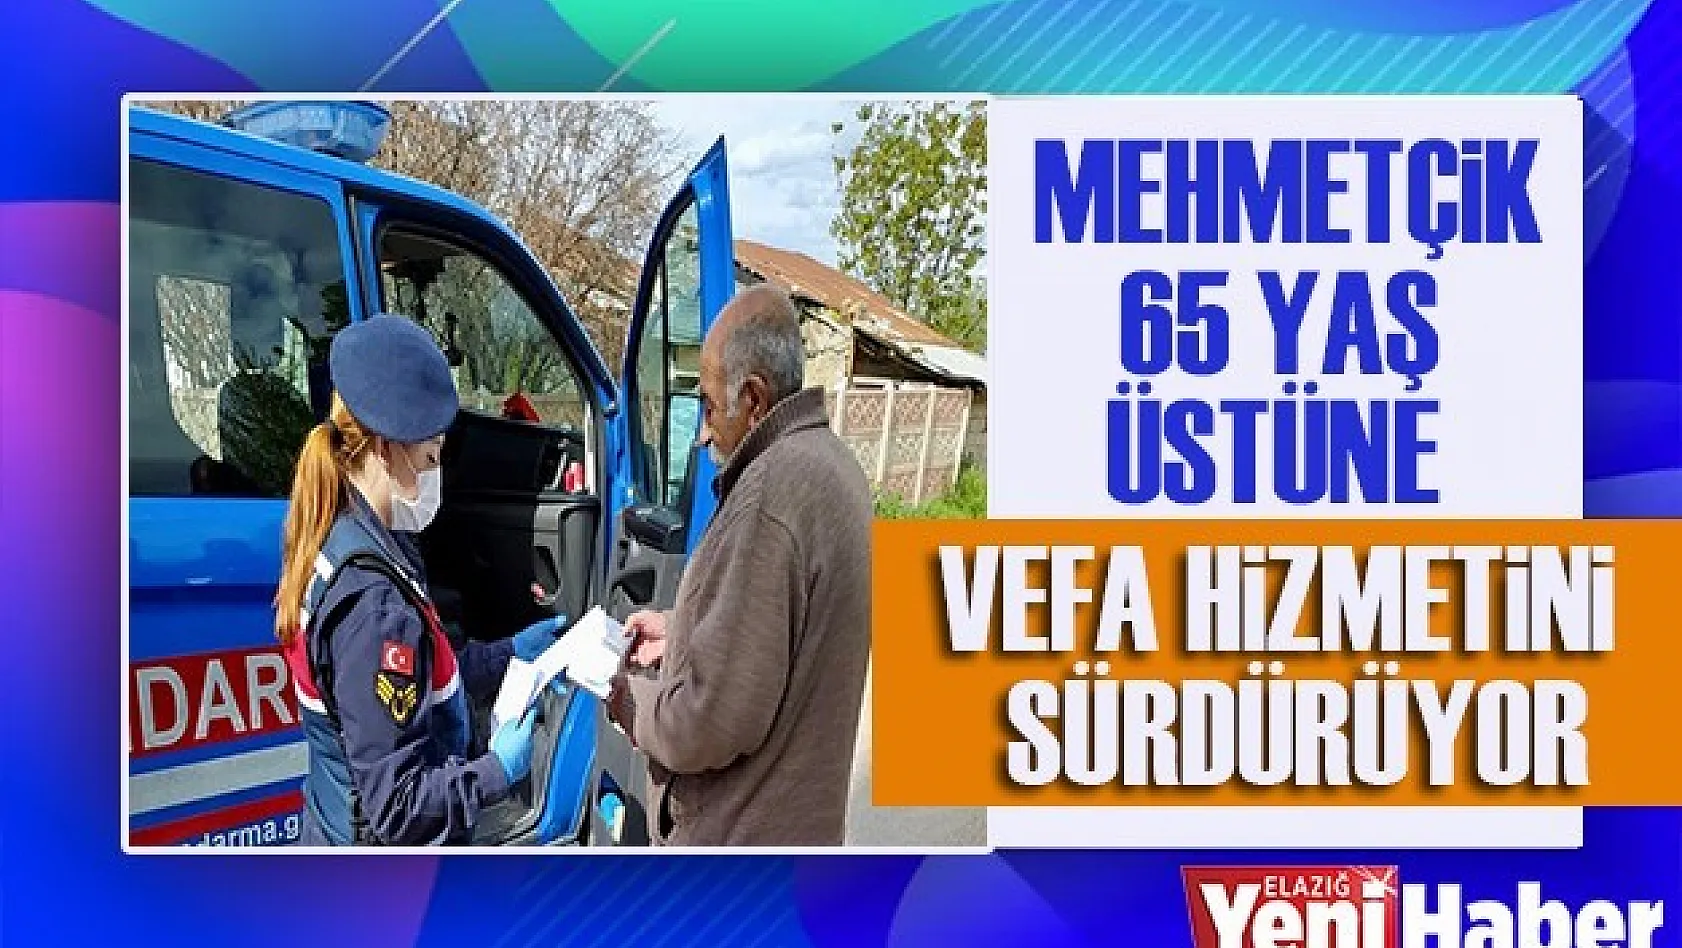 Mehmetçik, 65 Yaş Üstüne Vefa Hizmetini Sürdürüyor